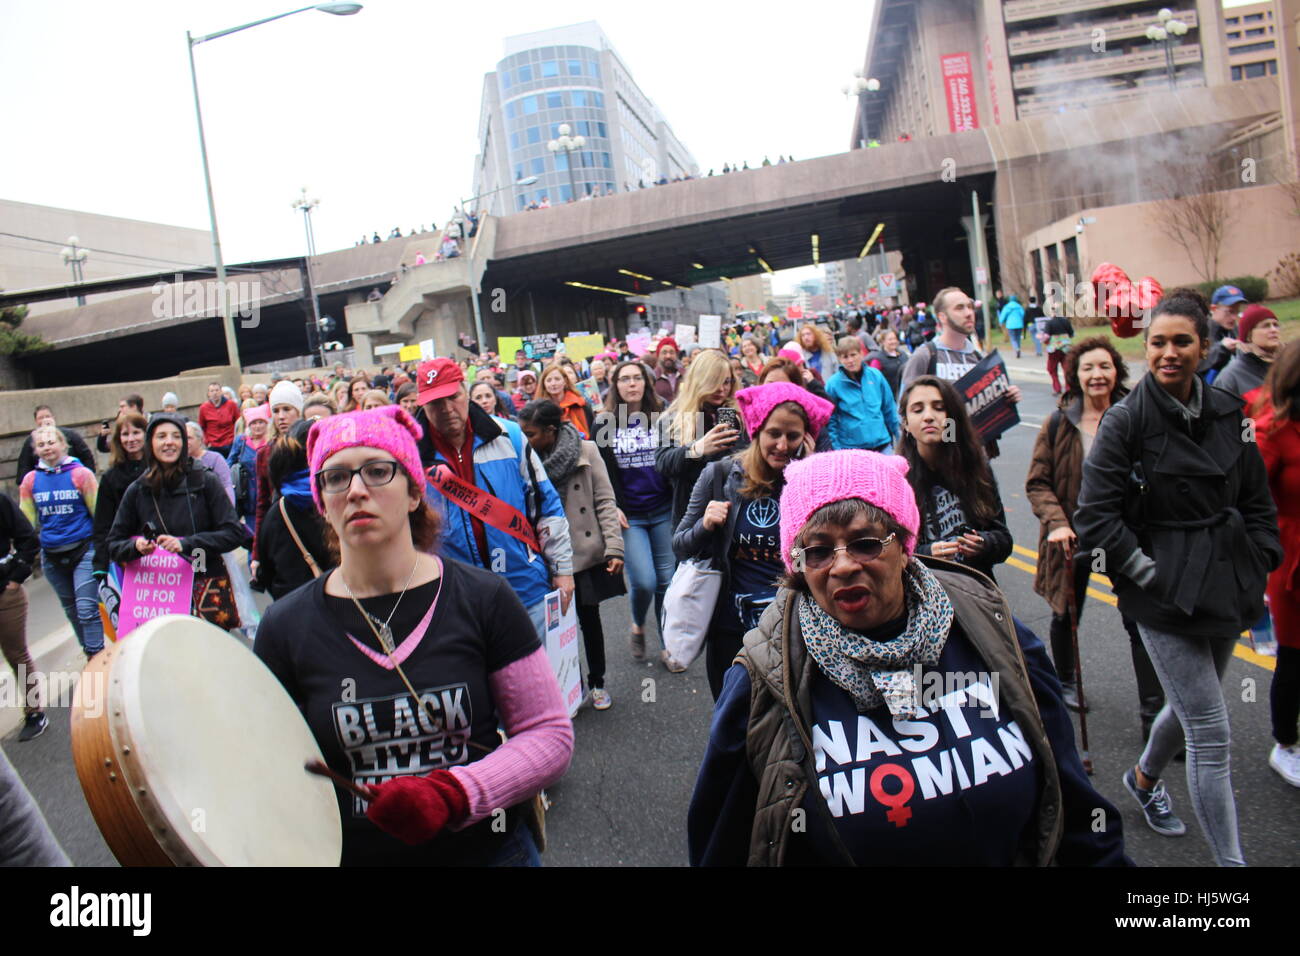 Distrikt von Columbia, USA. 21 Jan, 2017. Die demonstranten März entlang der Independence Avenue SW, einschließlich eine Frau schlug ein Buffalo drum. Stockfoto